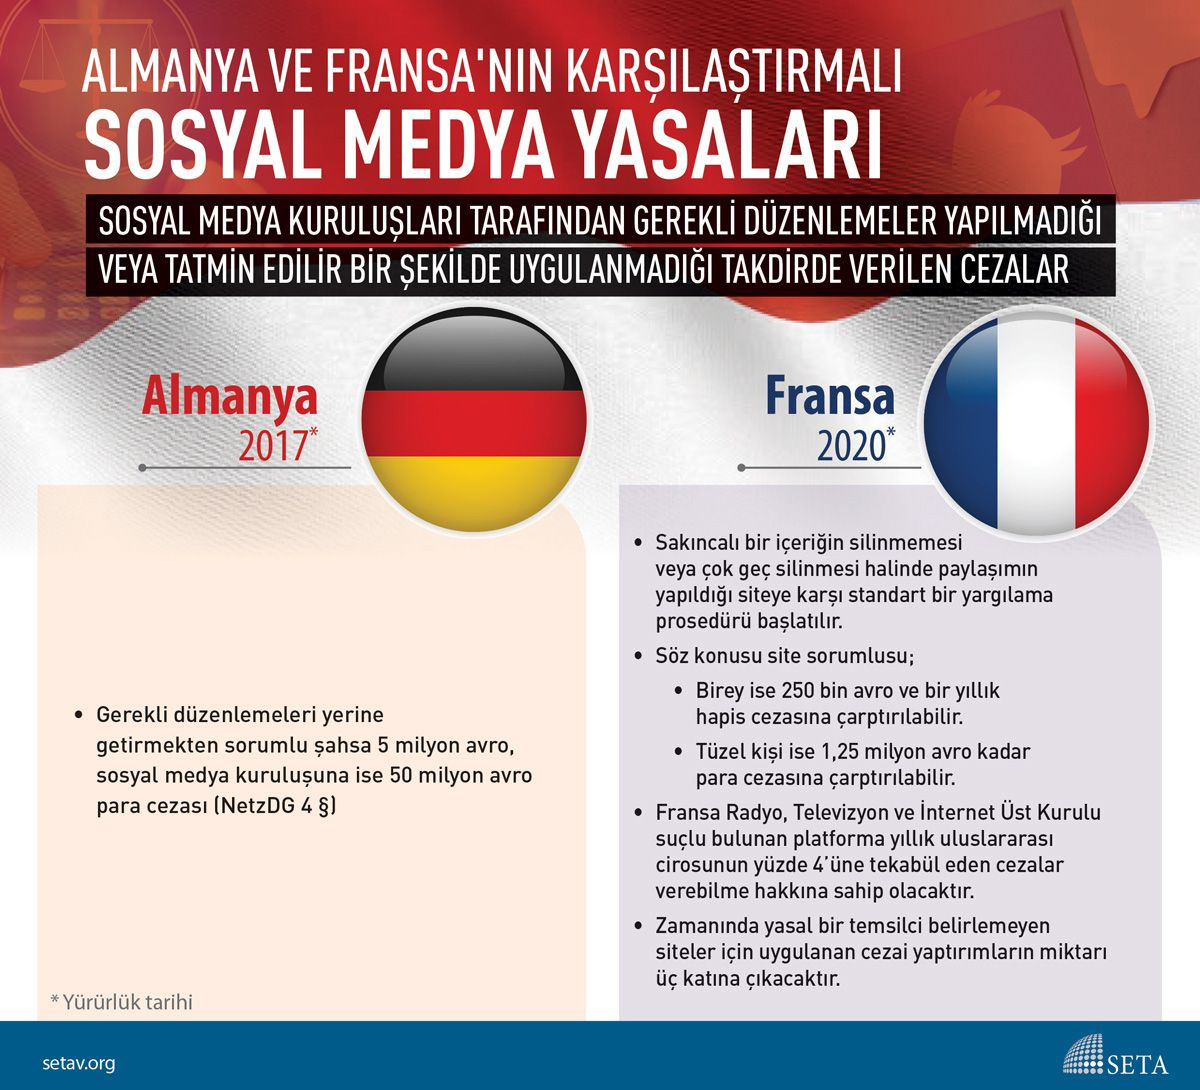 Almanya ve Fransa'da sosyal medya kuralları neler? - Sayfa 1